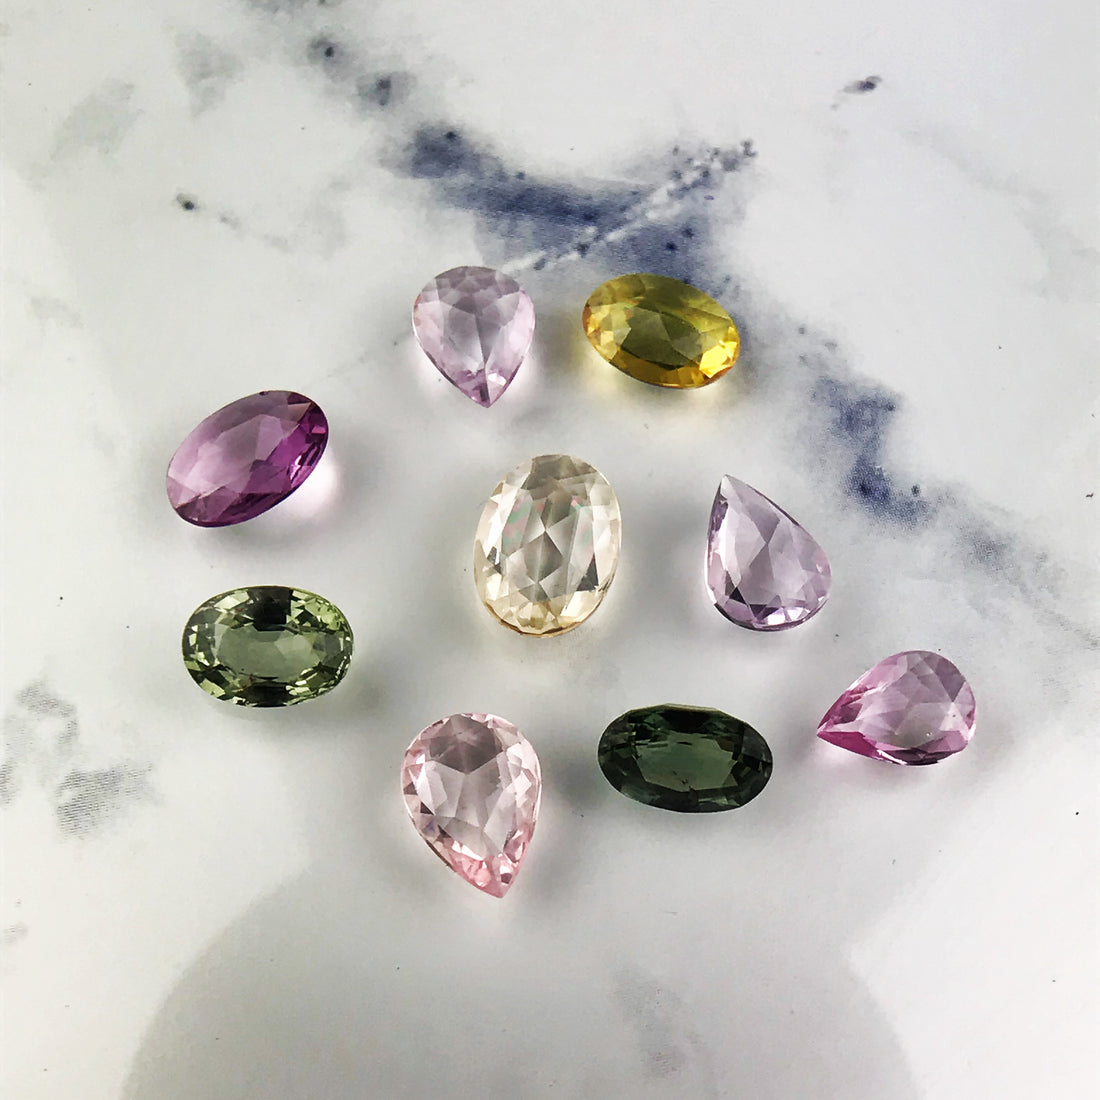 Gemstones, mohs scale